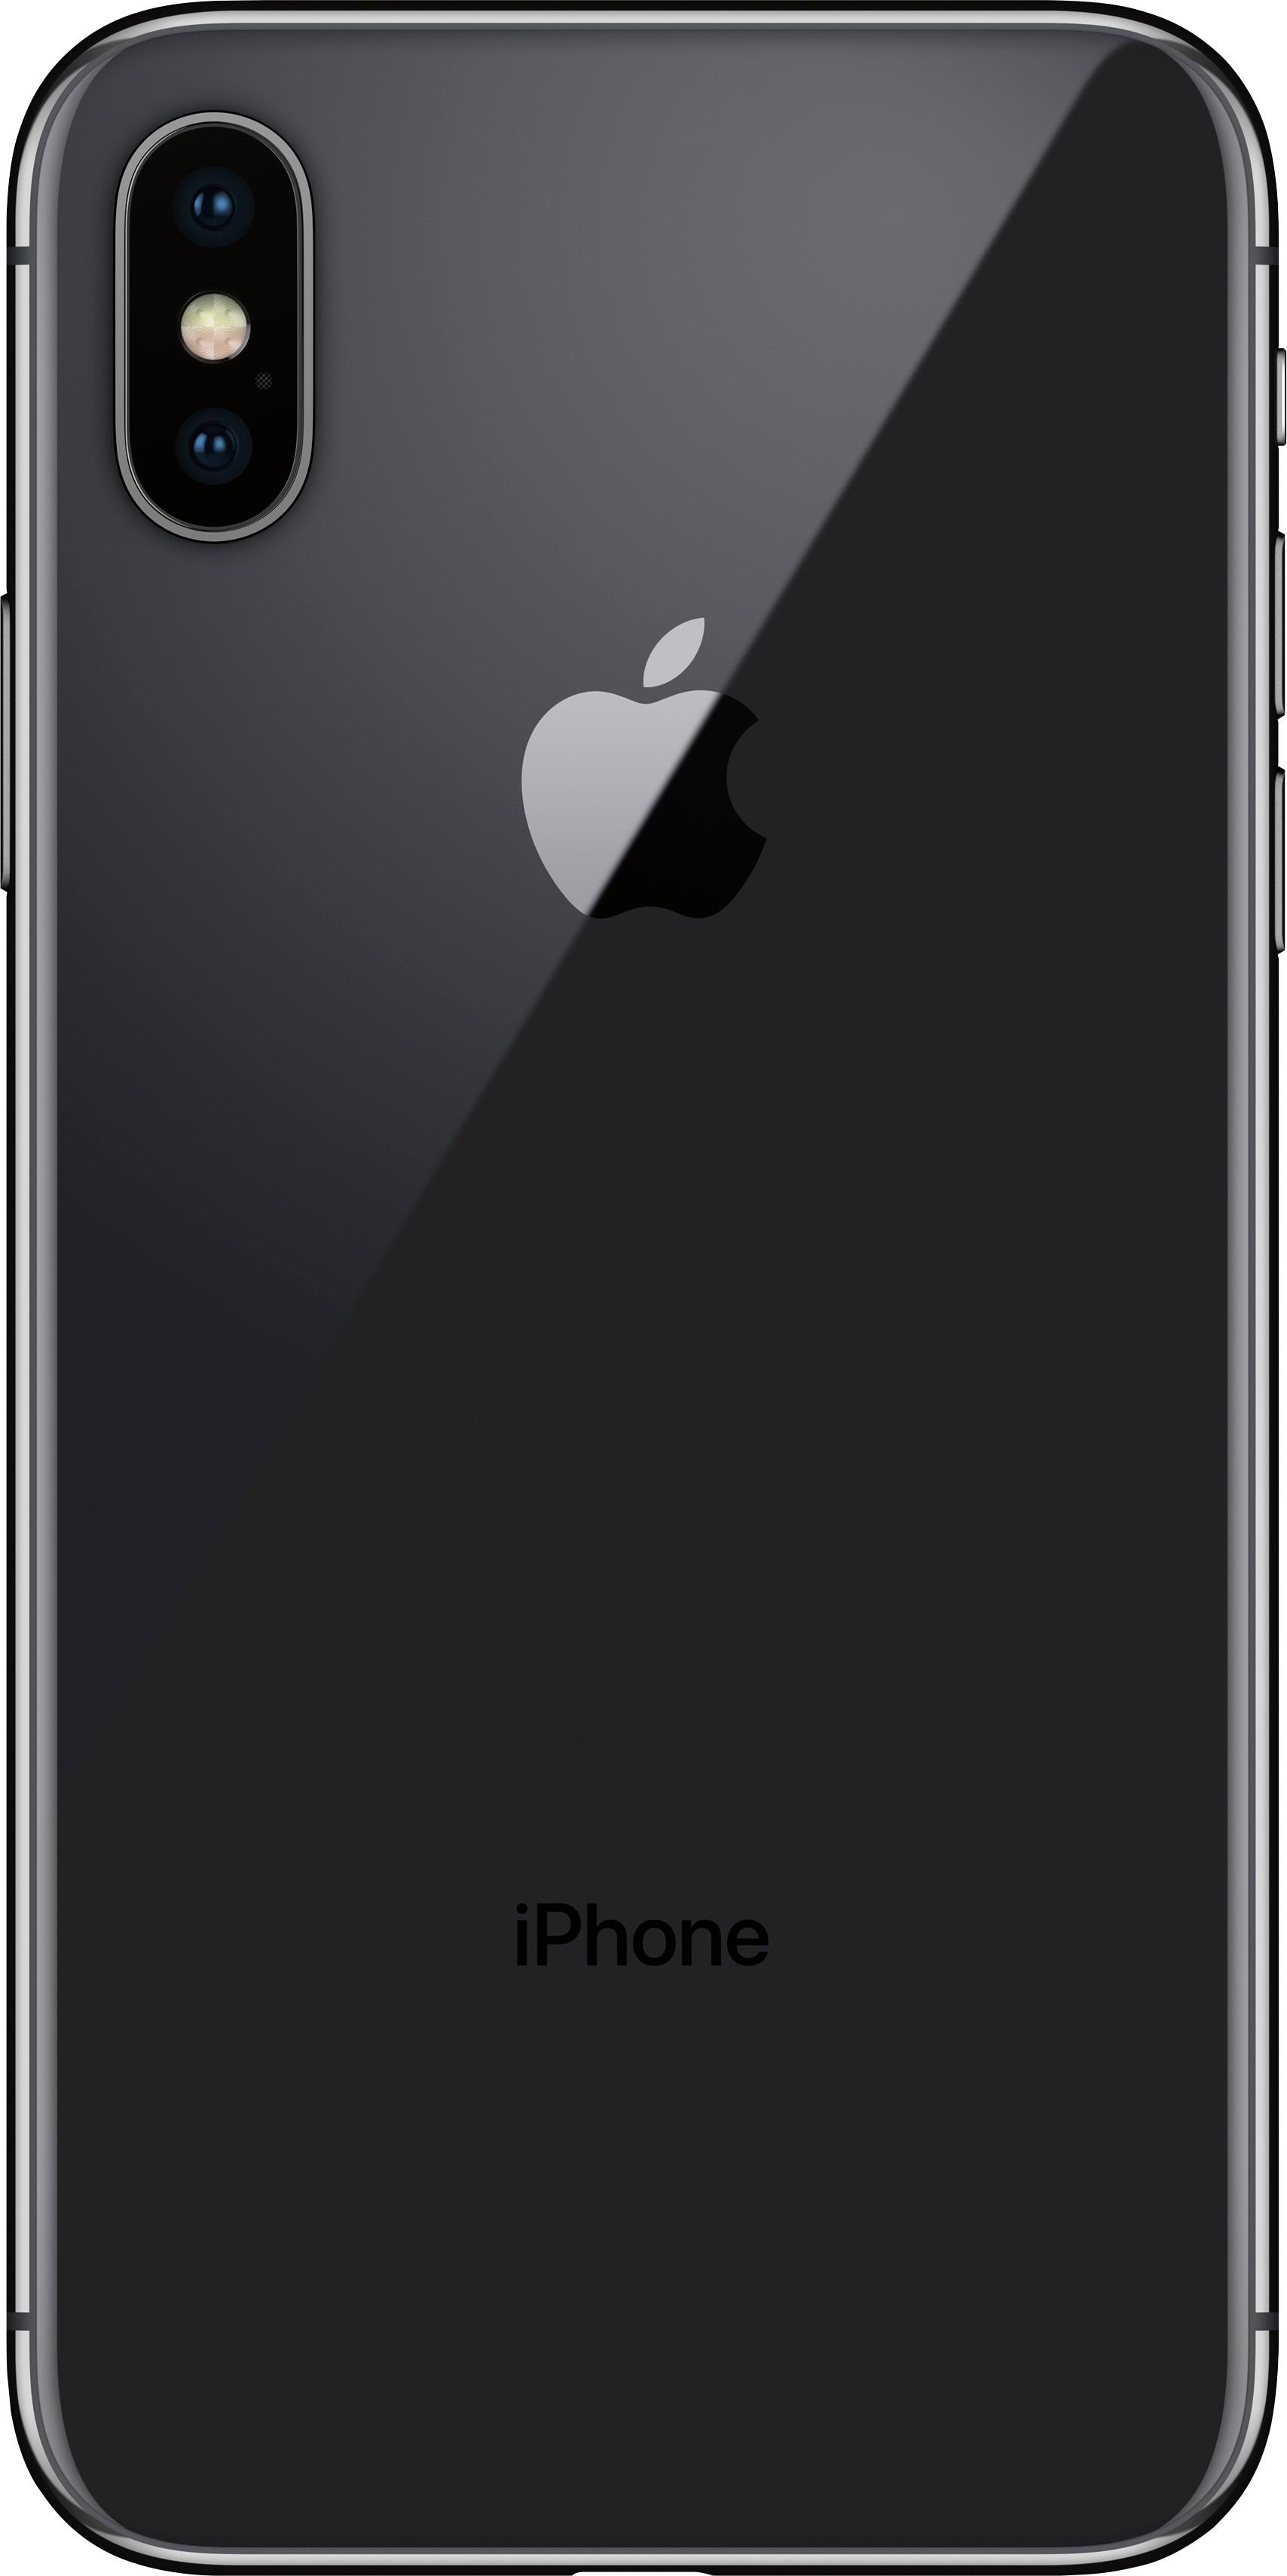 スマートフォン/携帯電話 スマートフォン本体 Best Buy: Apple iPhone X 256GB Space Gray (Verizon) MQA82LL/A